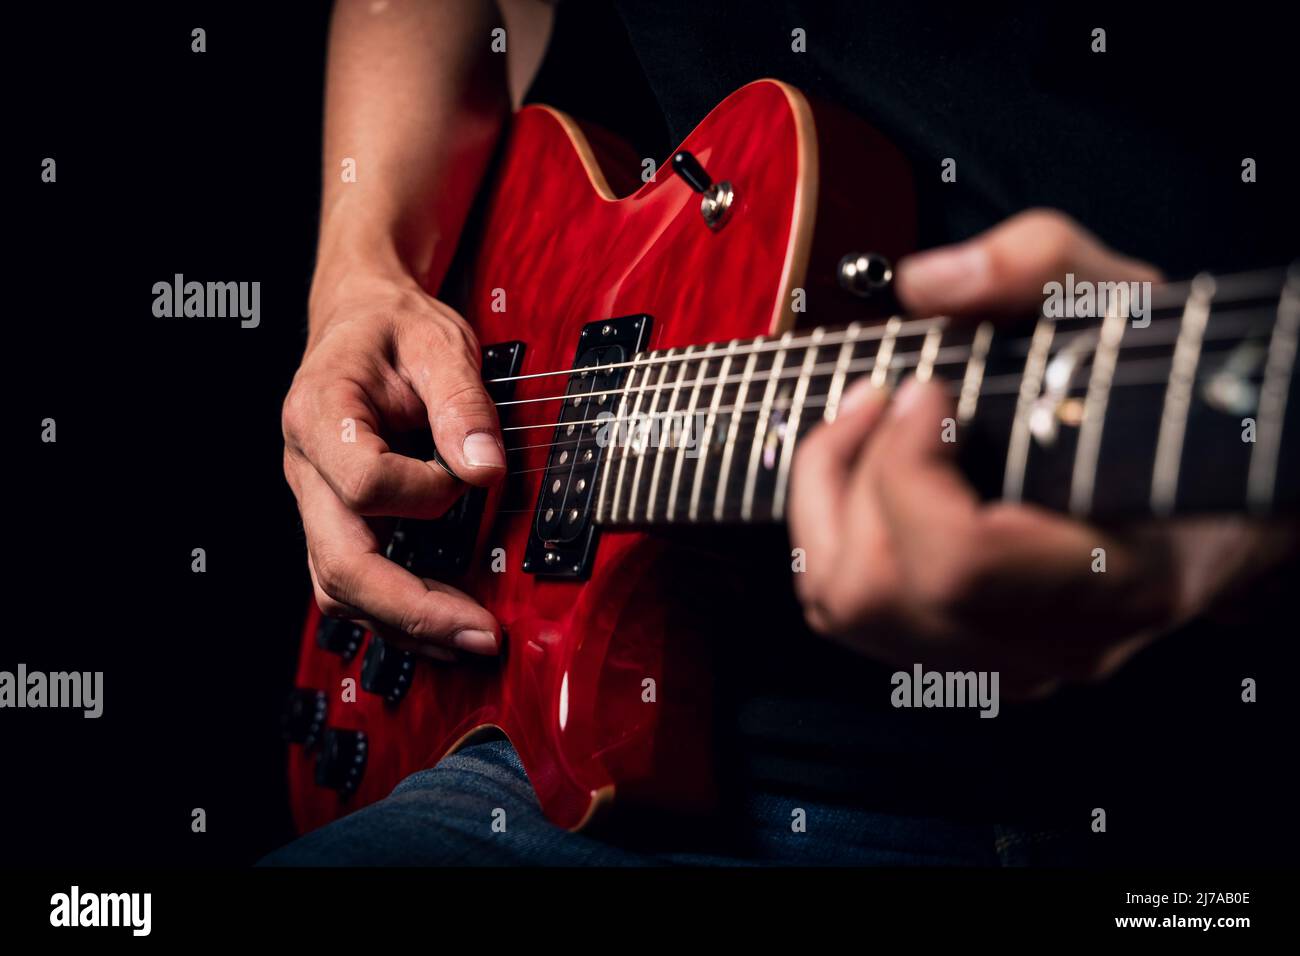 Primo piano di un uomo che suona una chitarra elettrica rossa lucida Foto Stock